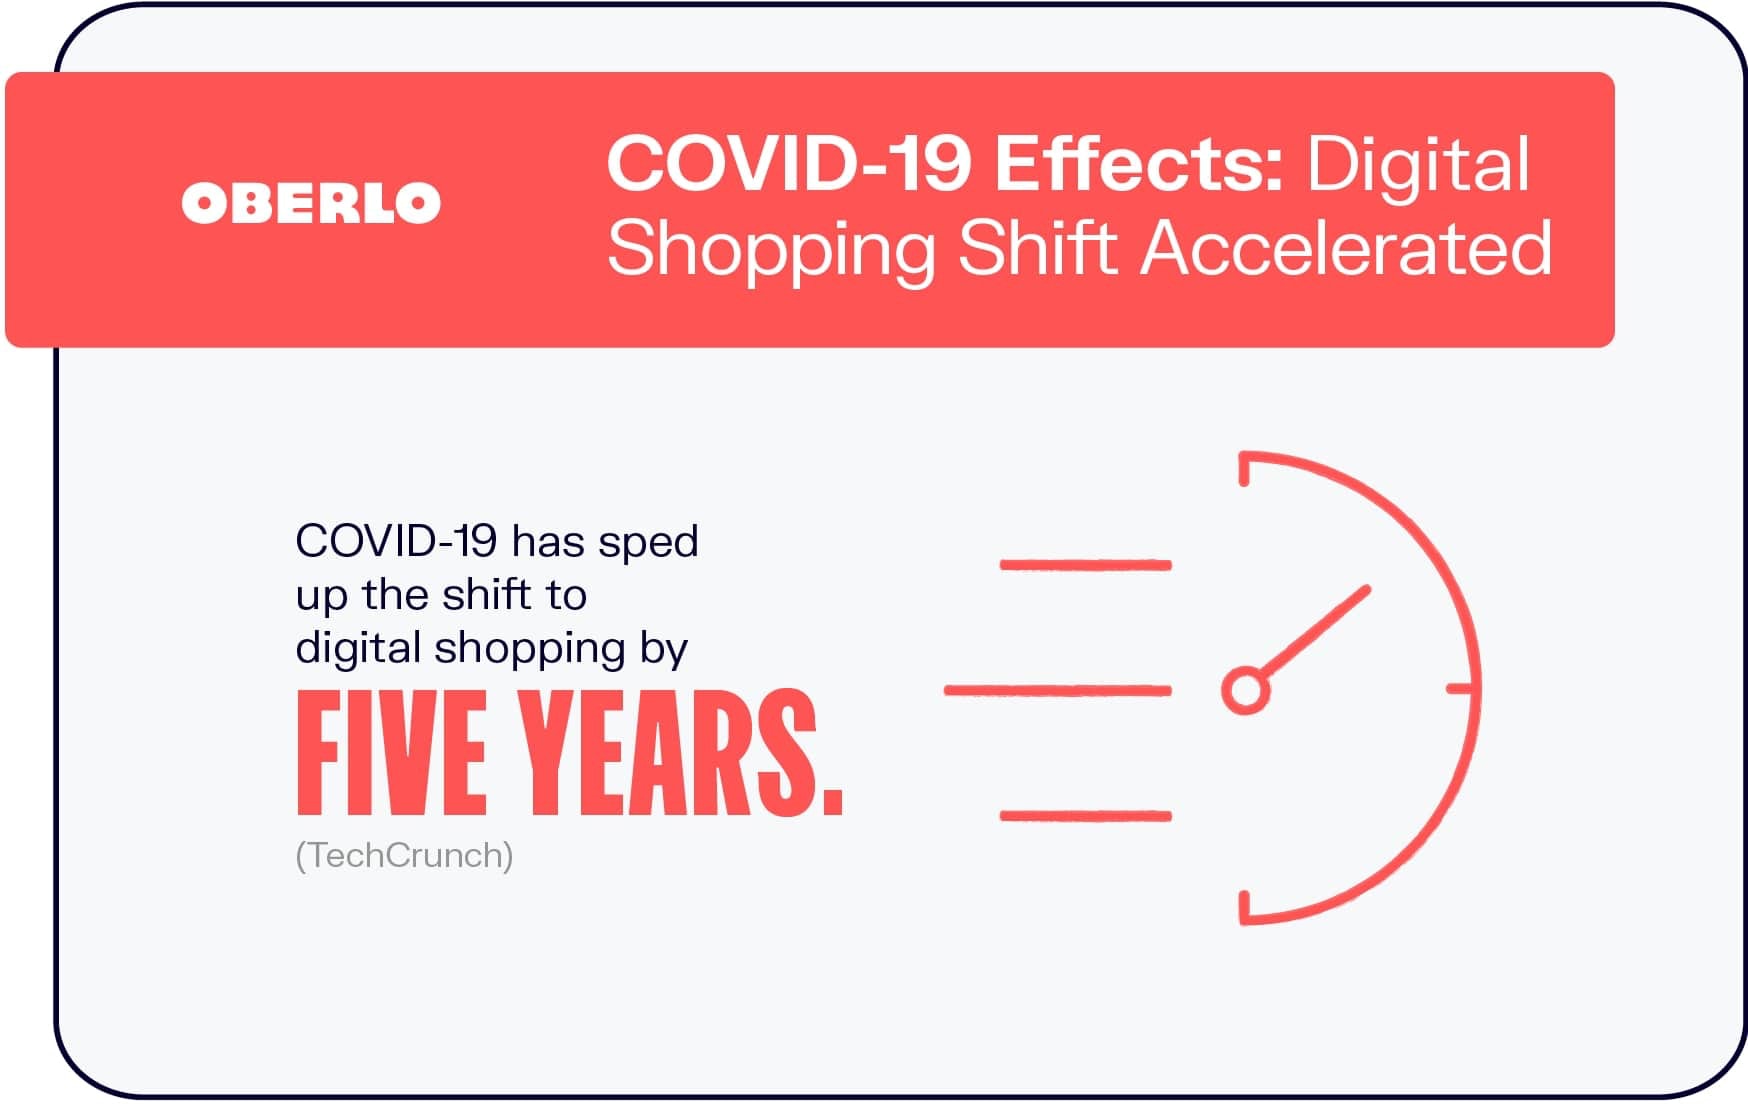 Efectos de COVID-19: cambio de compras digital acelerado